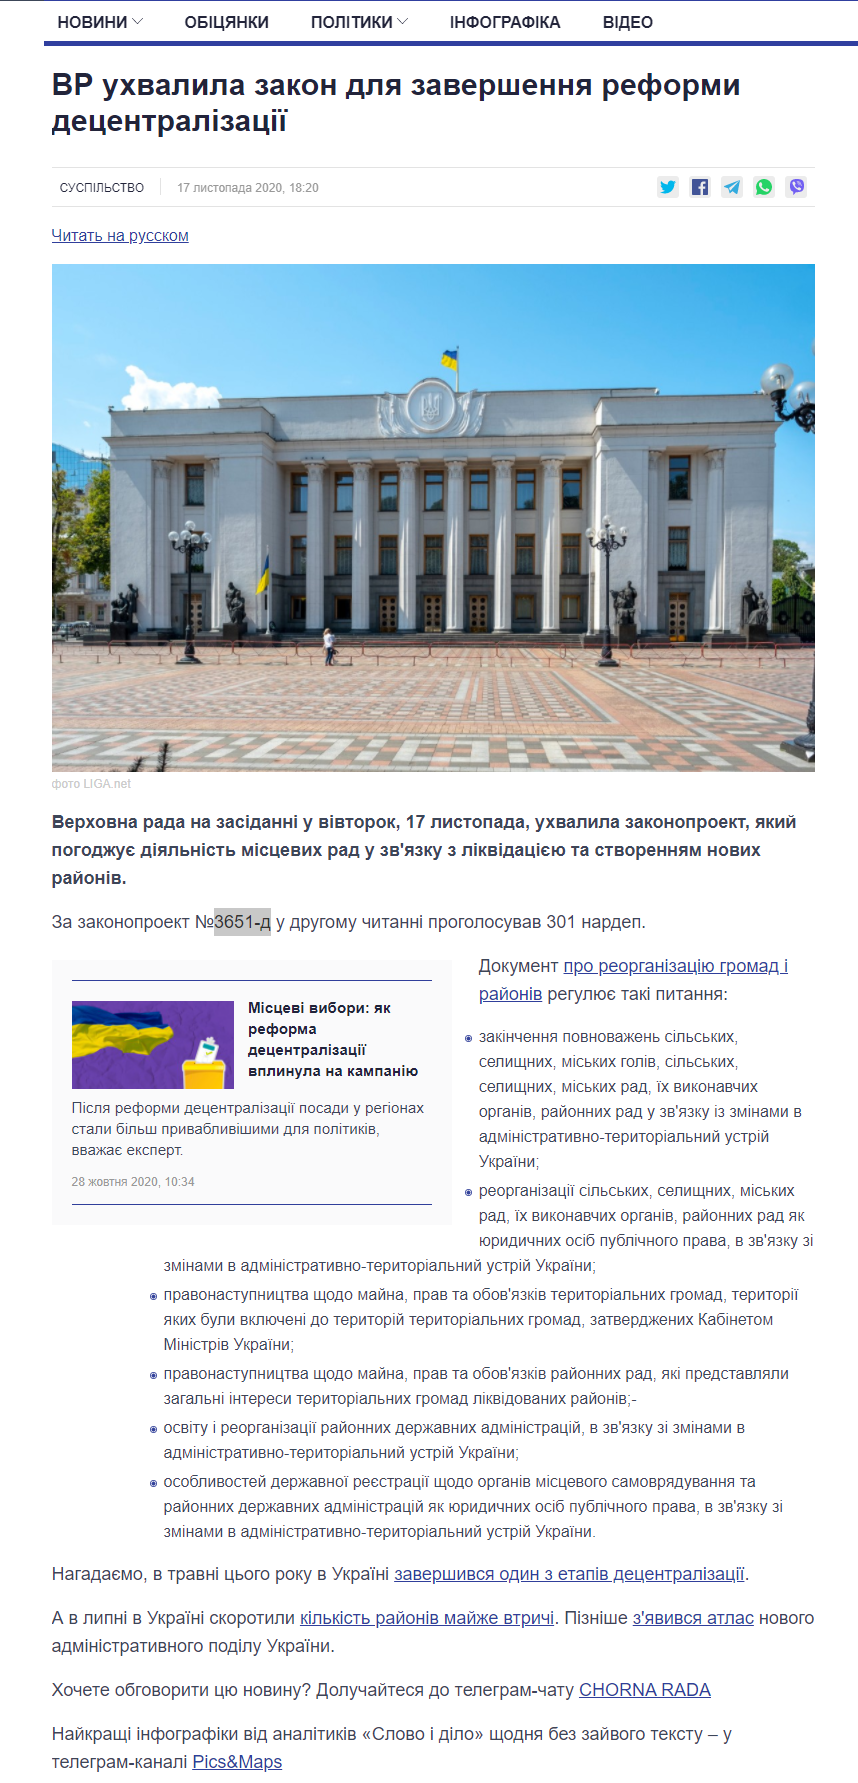 https://www.slovoidilo.ua/2020/11/17/novyna/suspilstvo/vr-uxvalyla-zakon-zavershennya-reformy-decentralizacziyi